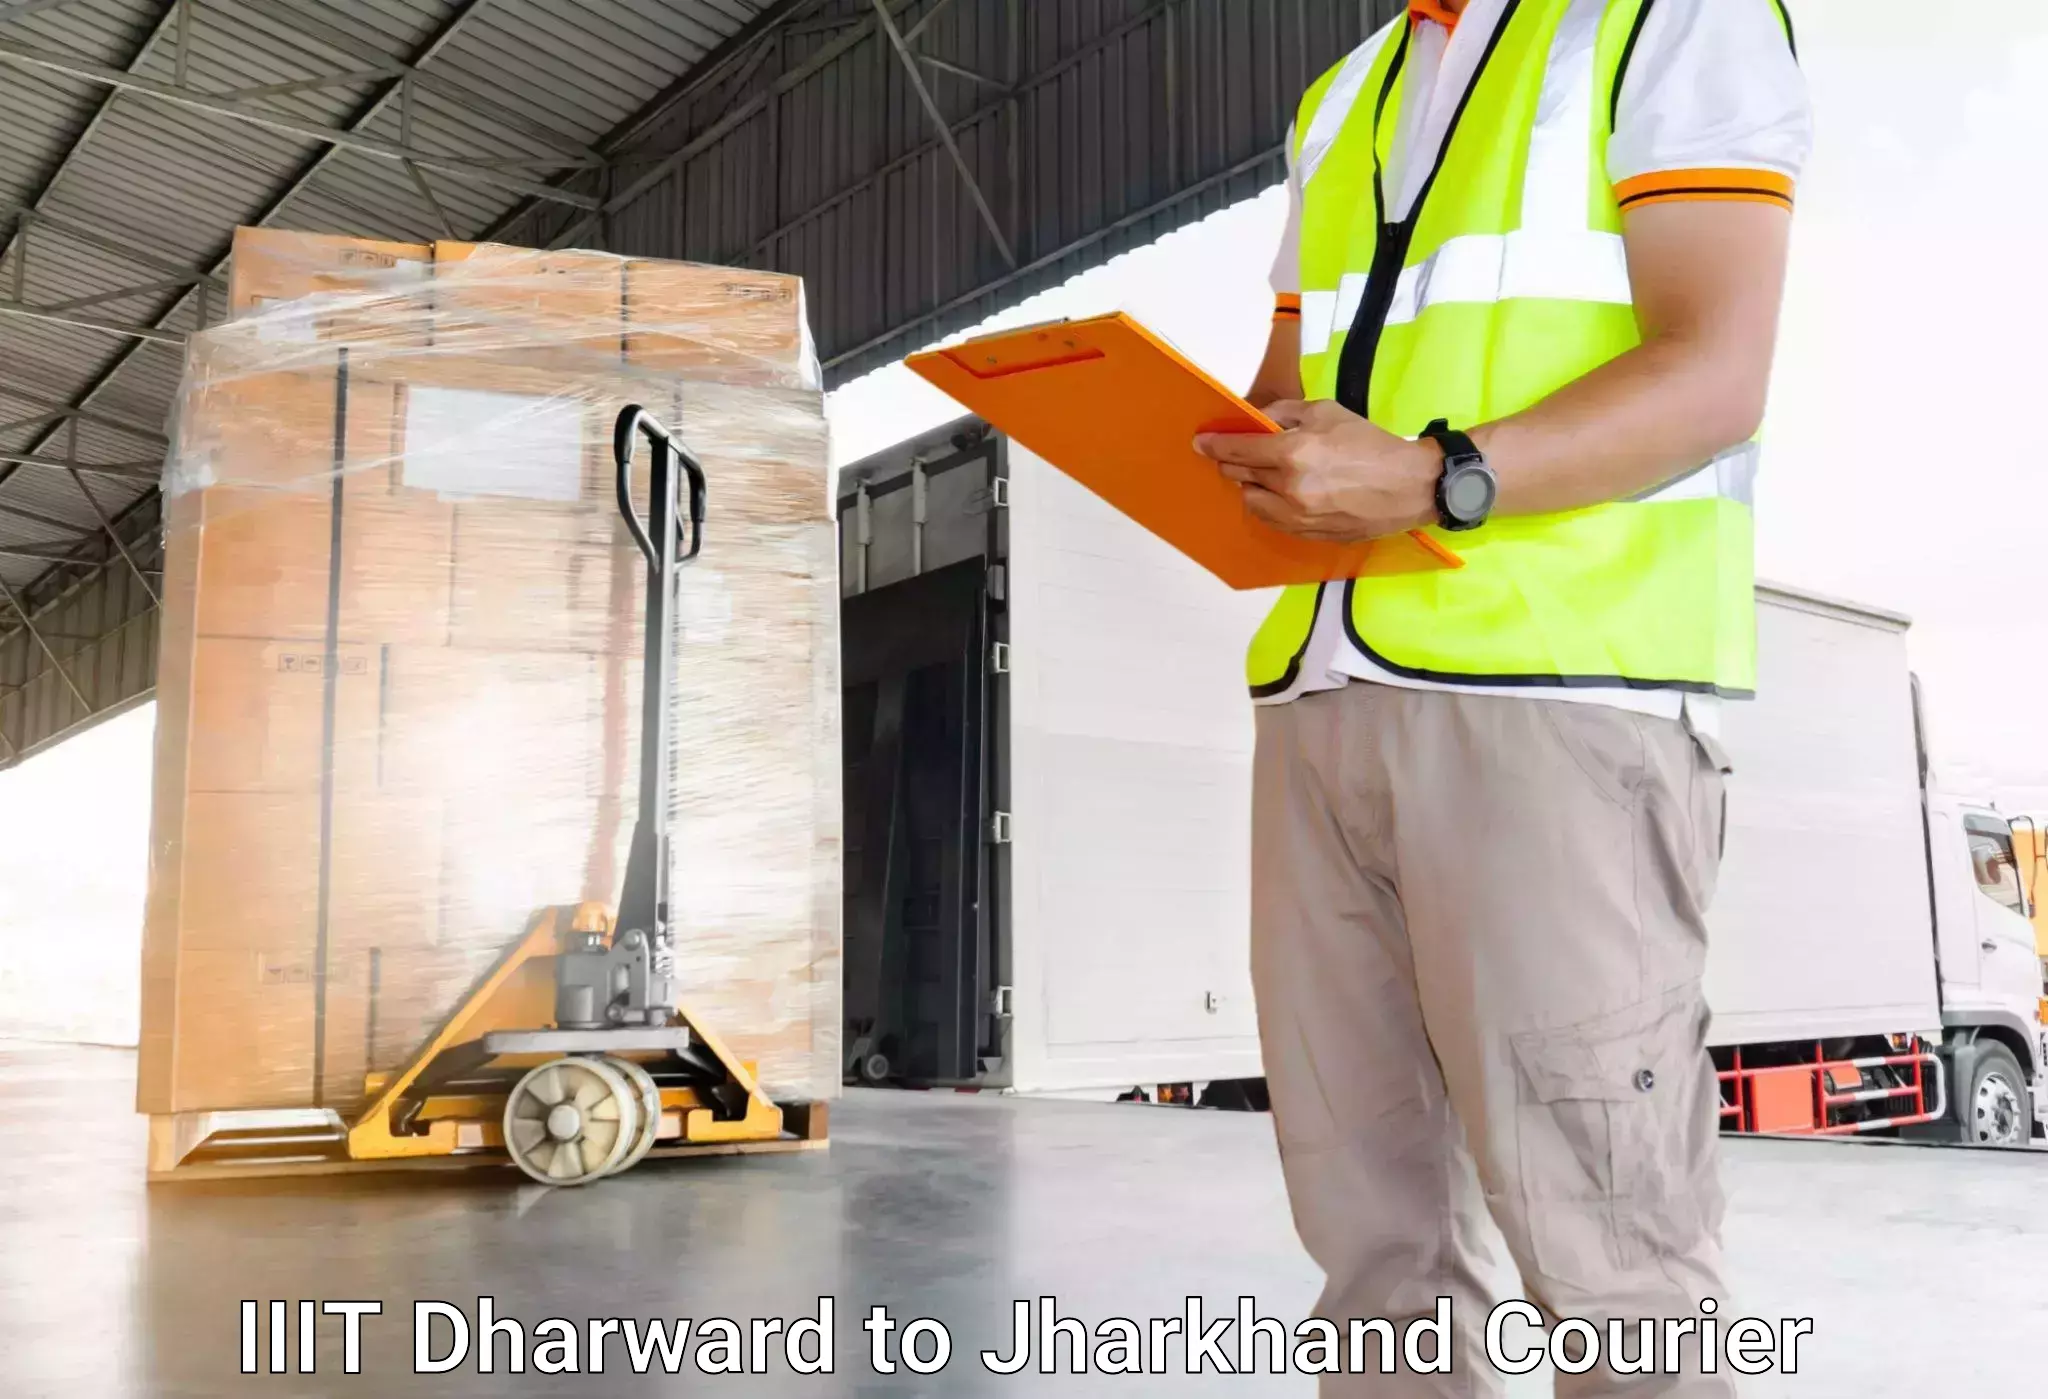 Door-to-door baggage service IIIT Dharward to Chandwa